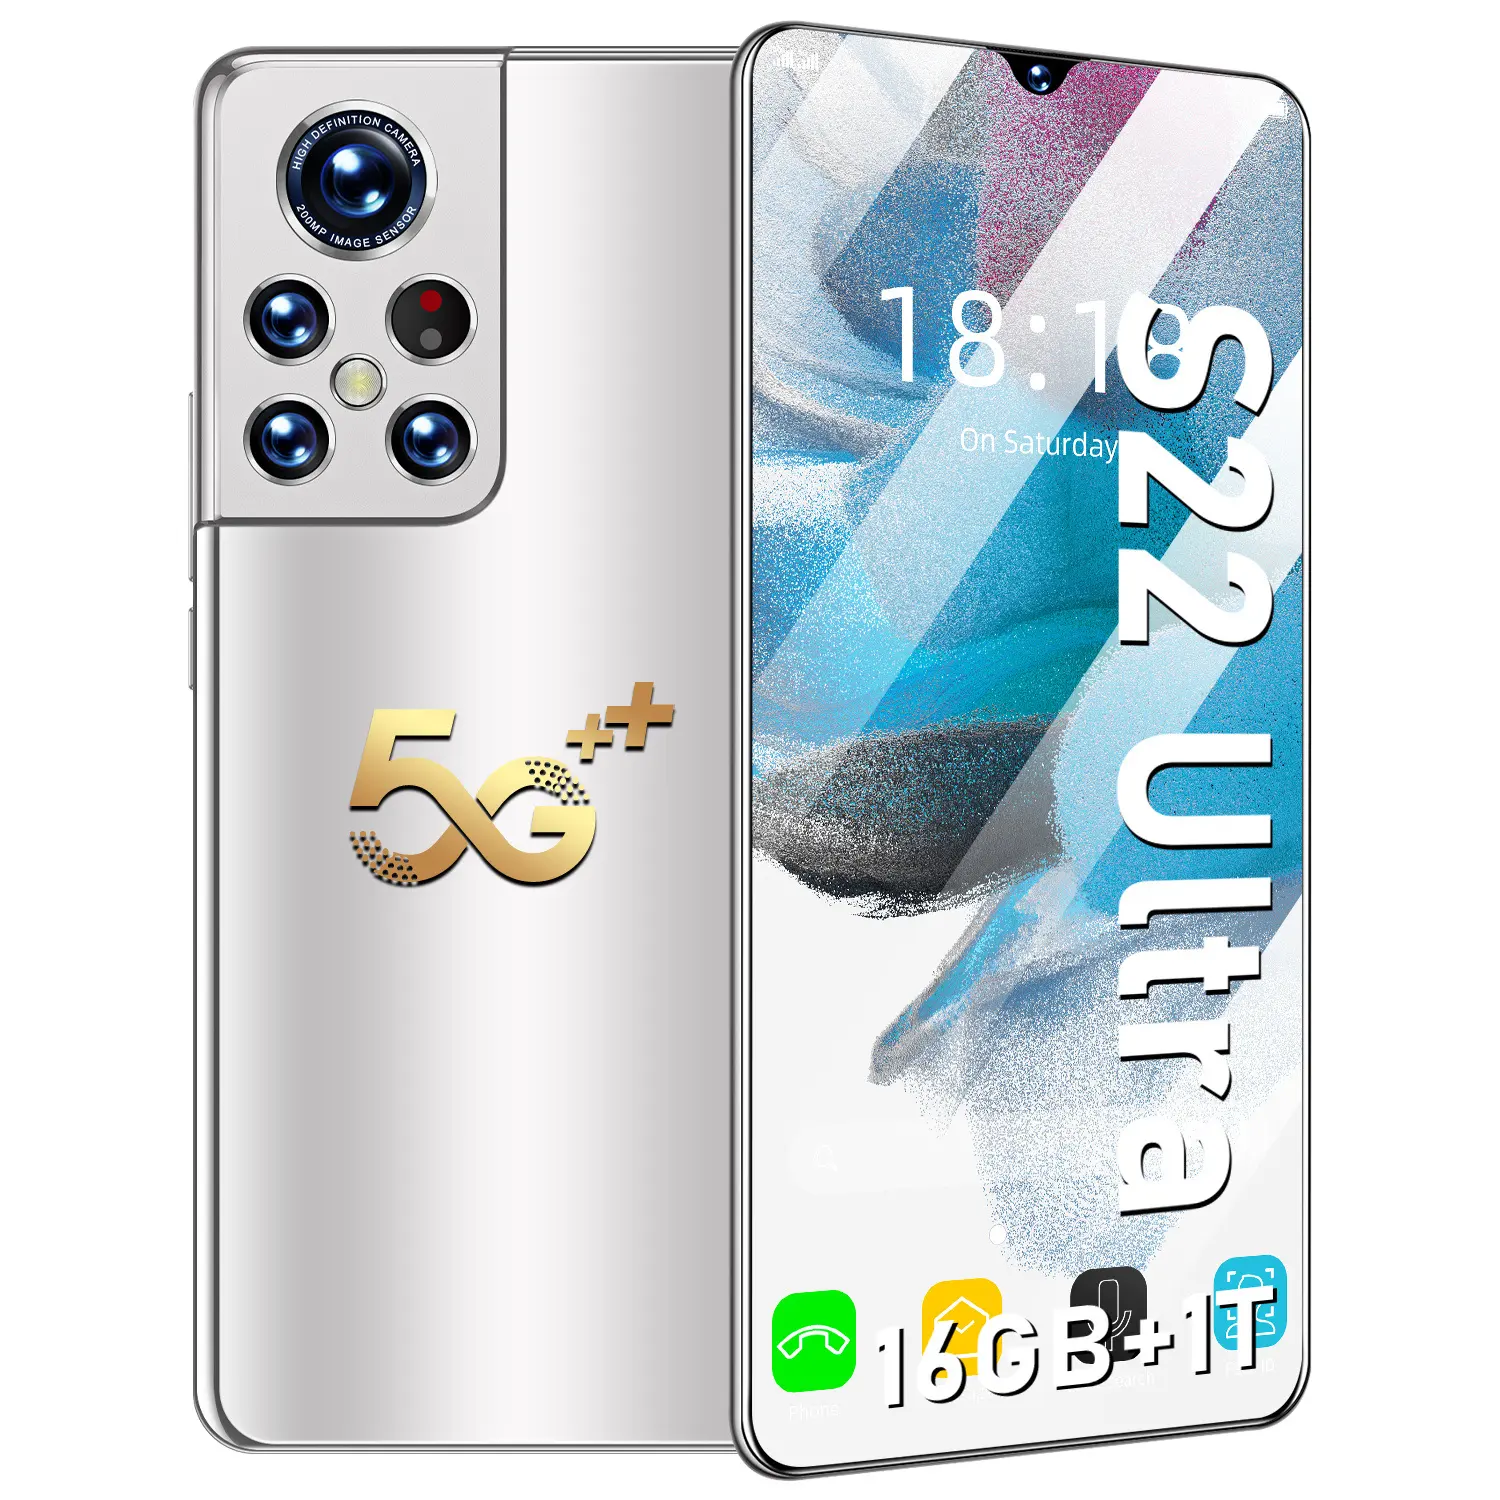 حار بيع أحدث وضع S22 5G 90Hz AMOLED الأصلي 6.9 بوصة الشاشة الكبيرة الألوان المبهرة الذكي عالية معدل التحديث الهواتف المحمولة